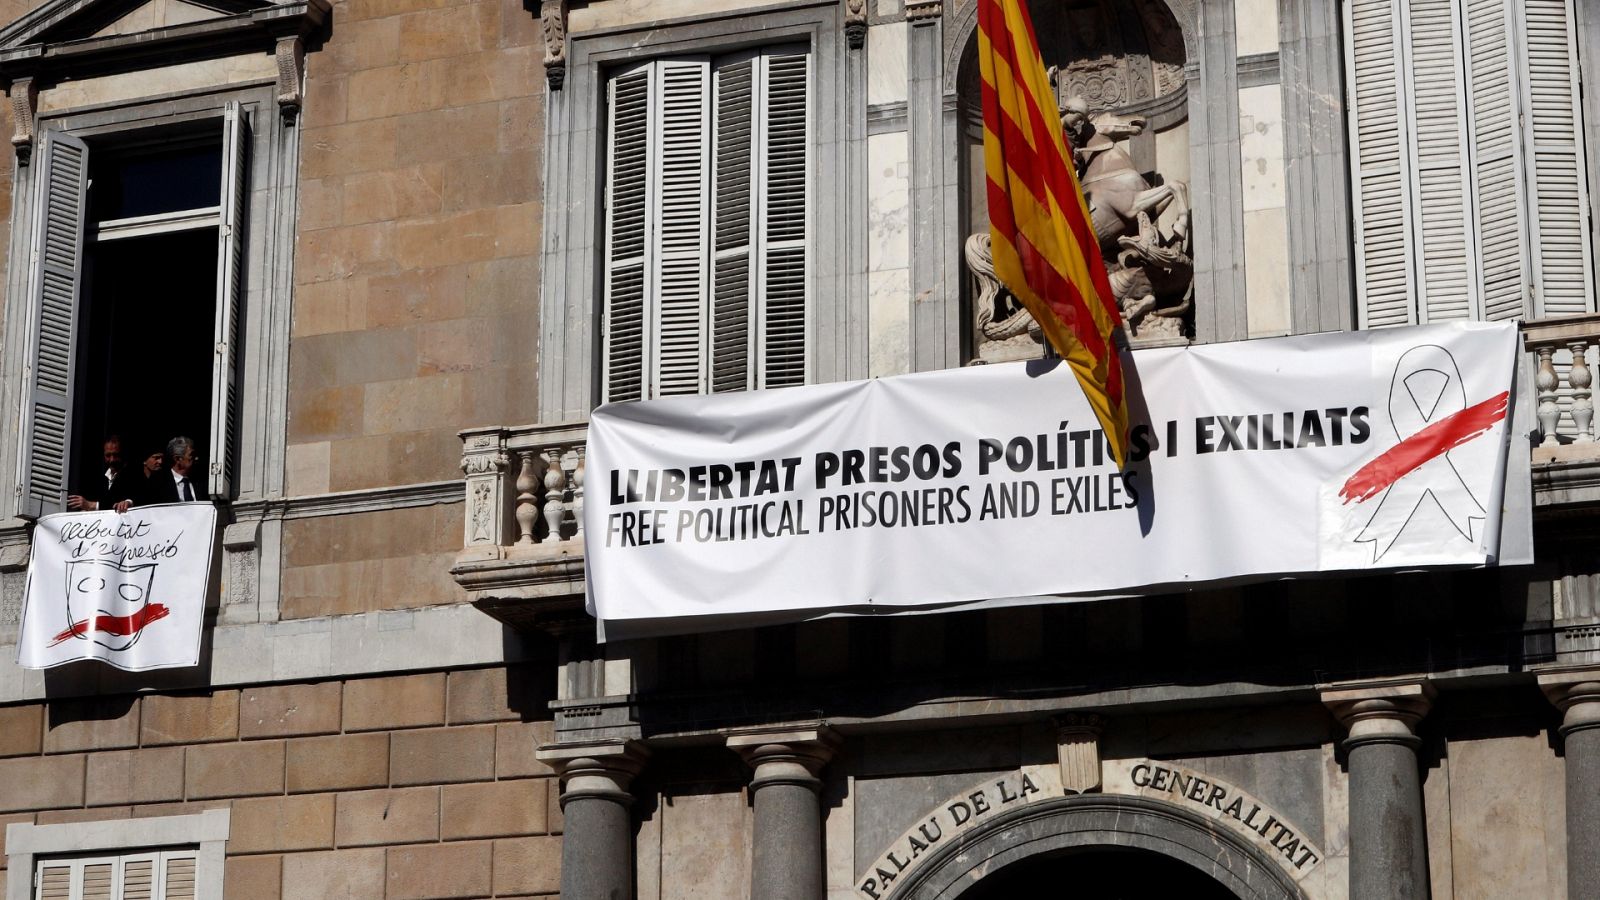 En la mañana de este jueves, varias personas han salido al balcón de la fachada principal del Palau de la Generalitat y han tapado la pancarta con el lazo amarillo con otra que también pide "libertad para los presos políticos y exiliados", pero con u